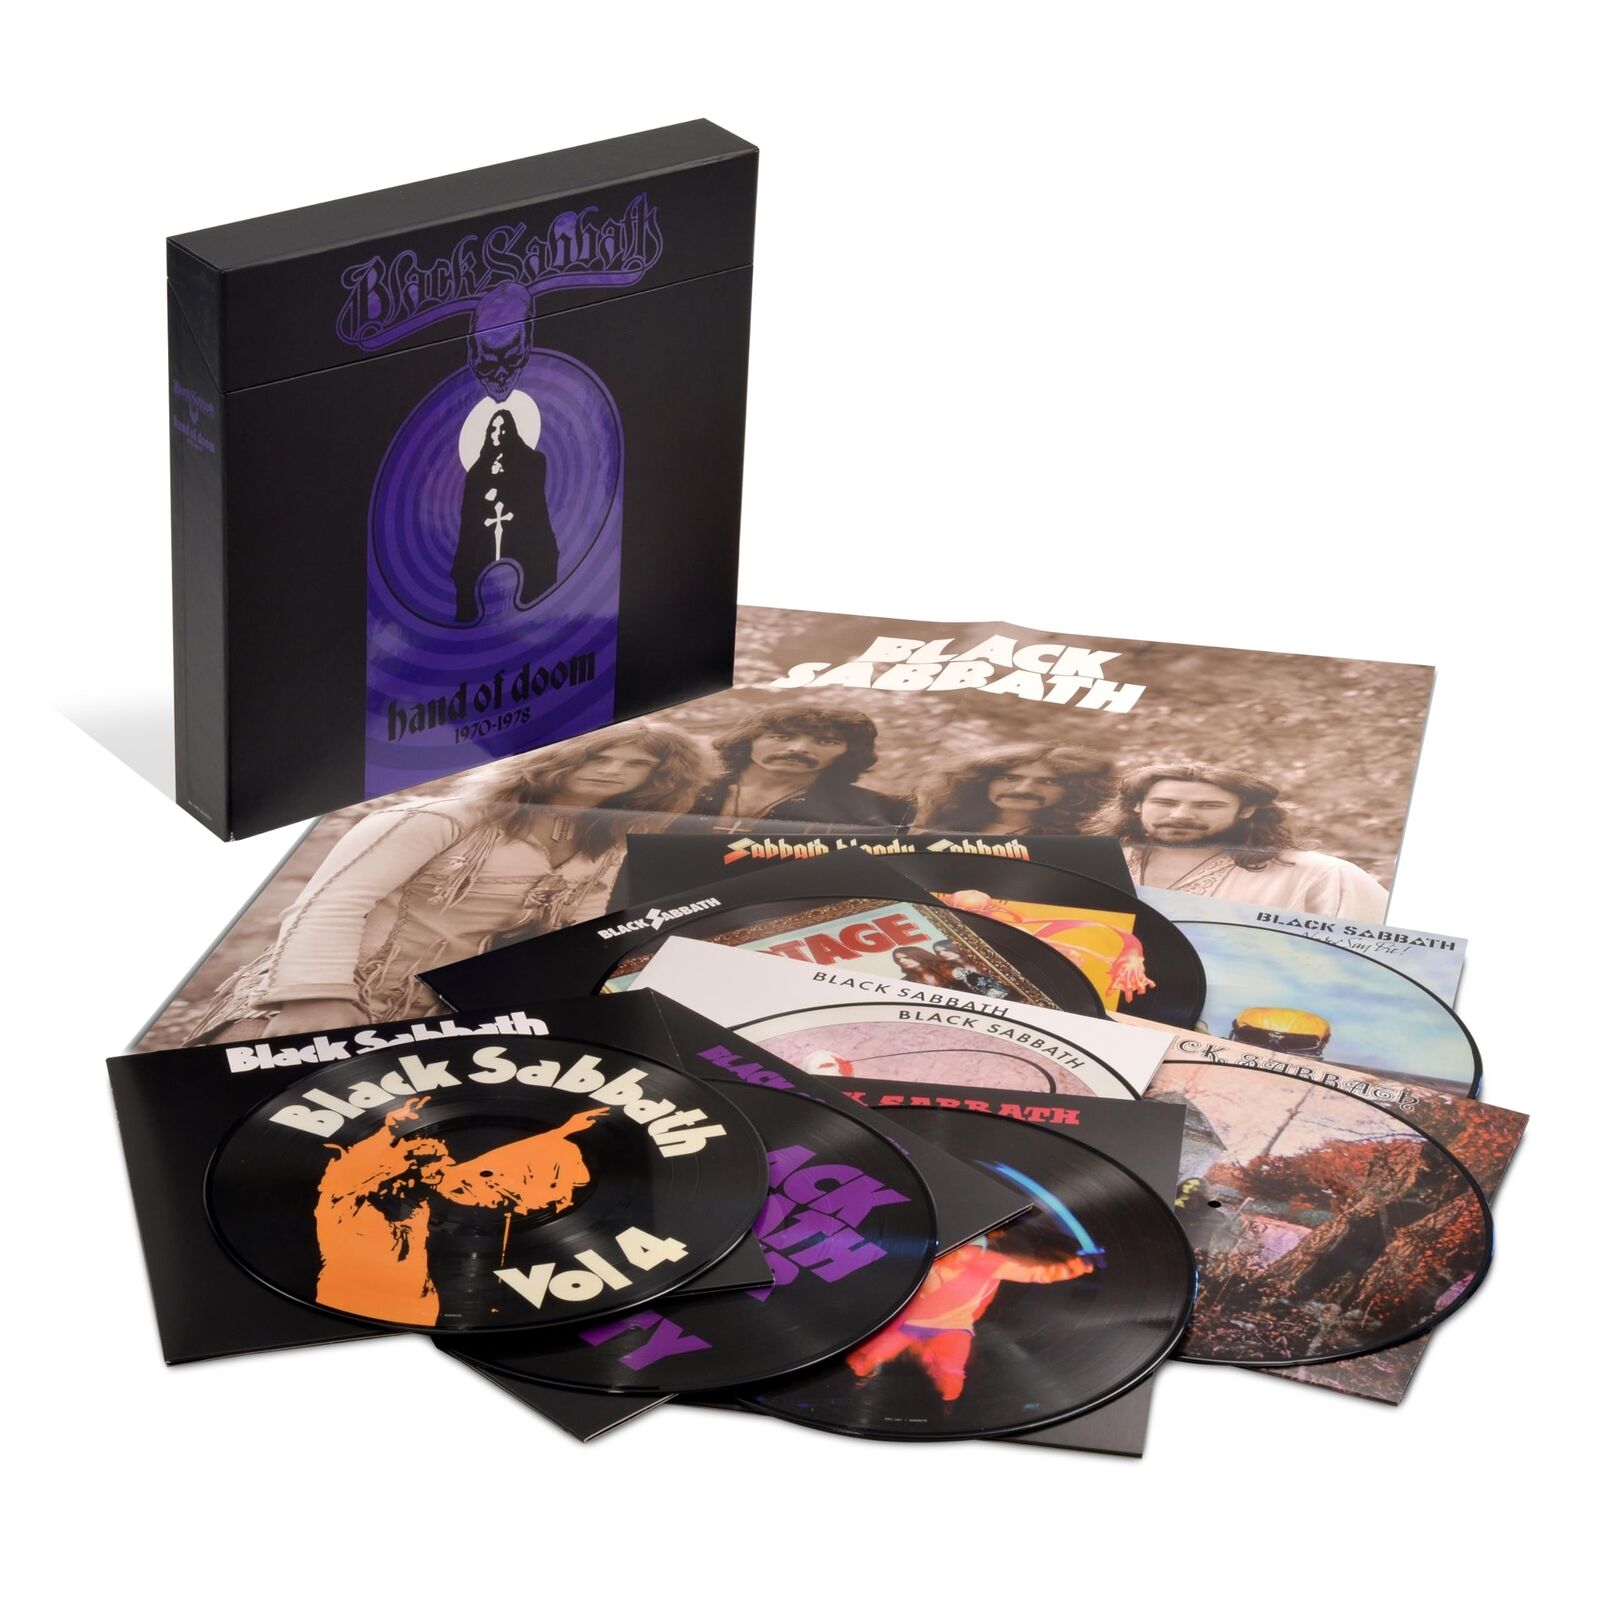 Black Sabbath Hand Of Doom 1970-1978 Picture Collection (Vinyl)